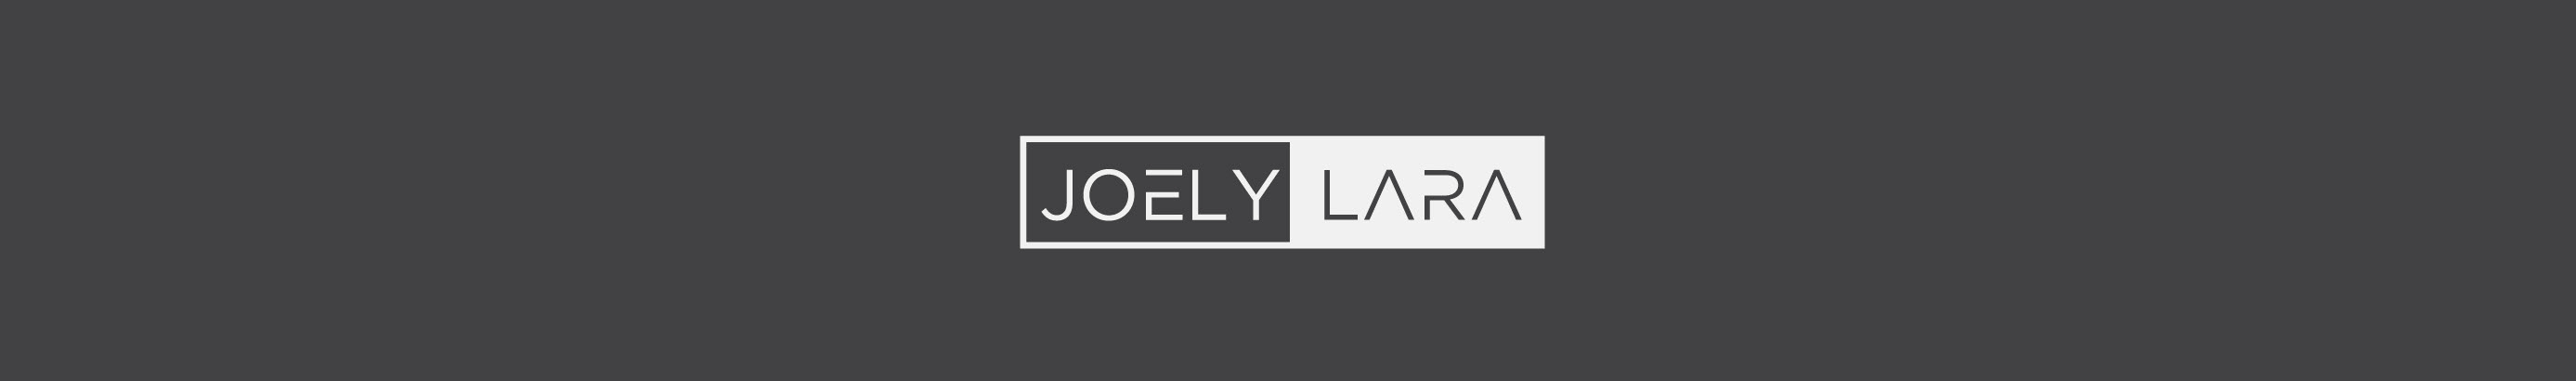 Joely Lara's profile banner